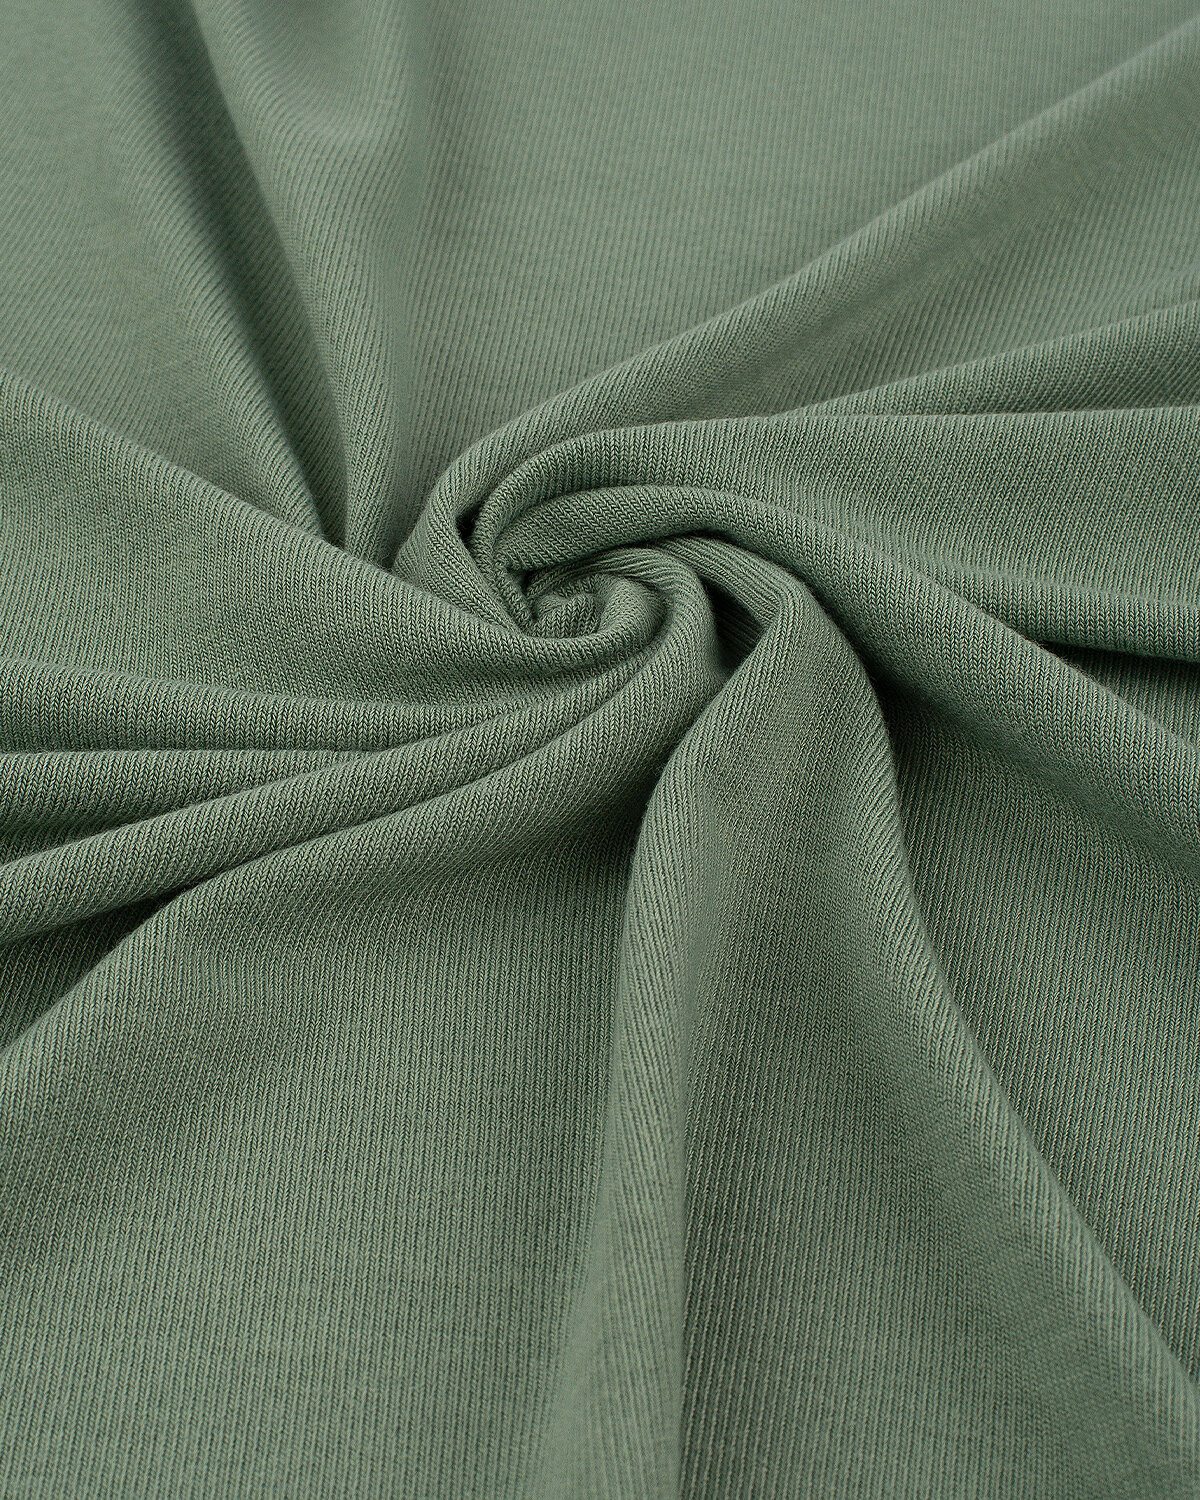 Ткань для шитья и рукоделия Трикотаж "Баритон" 1 м * 147 см, зеленый 013